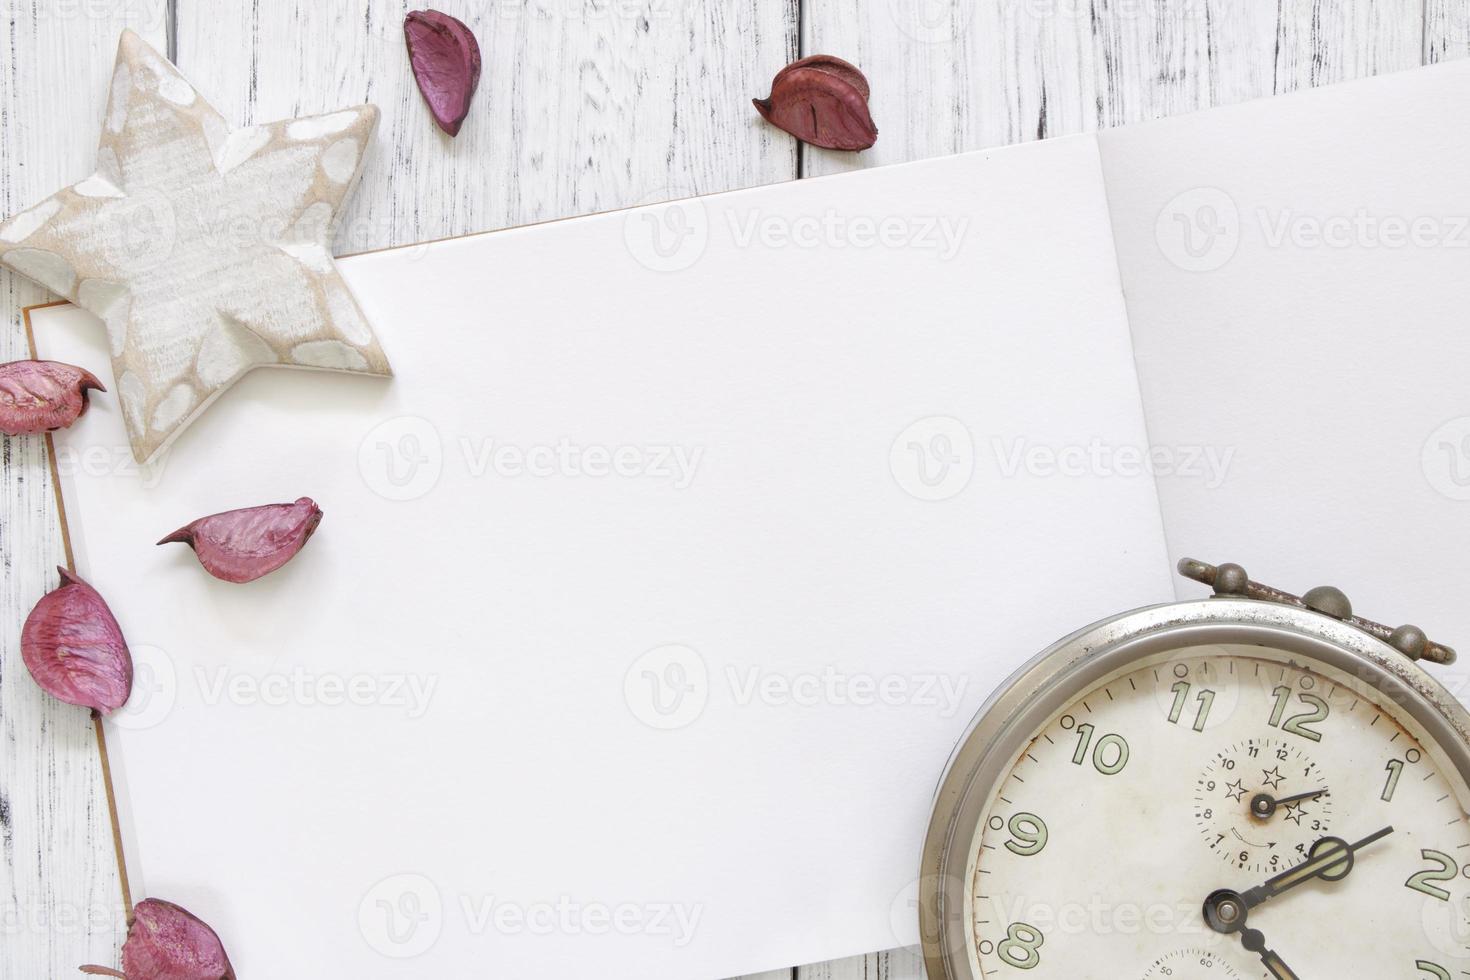 mesa de madera pintada de blanco pétalos de flores reloj despertador vintage estrella artesanal foto